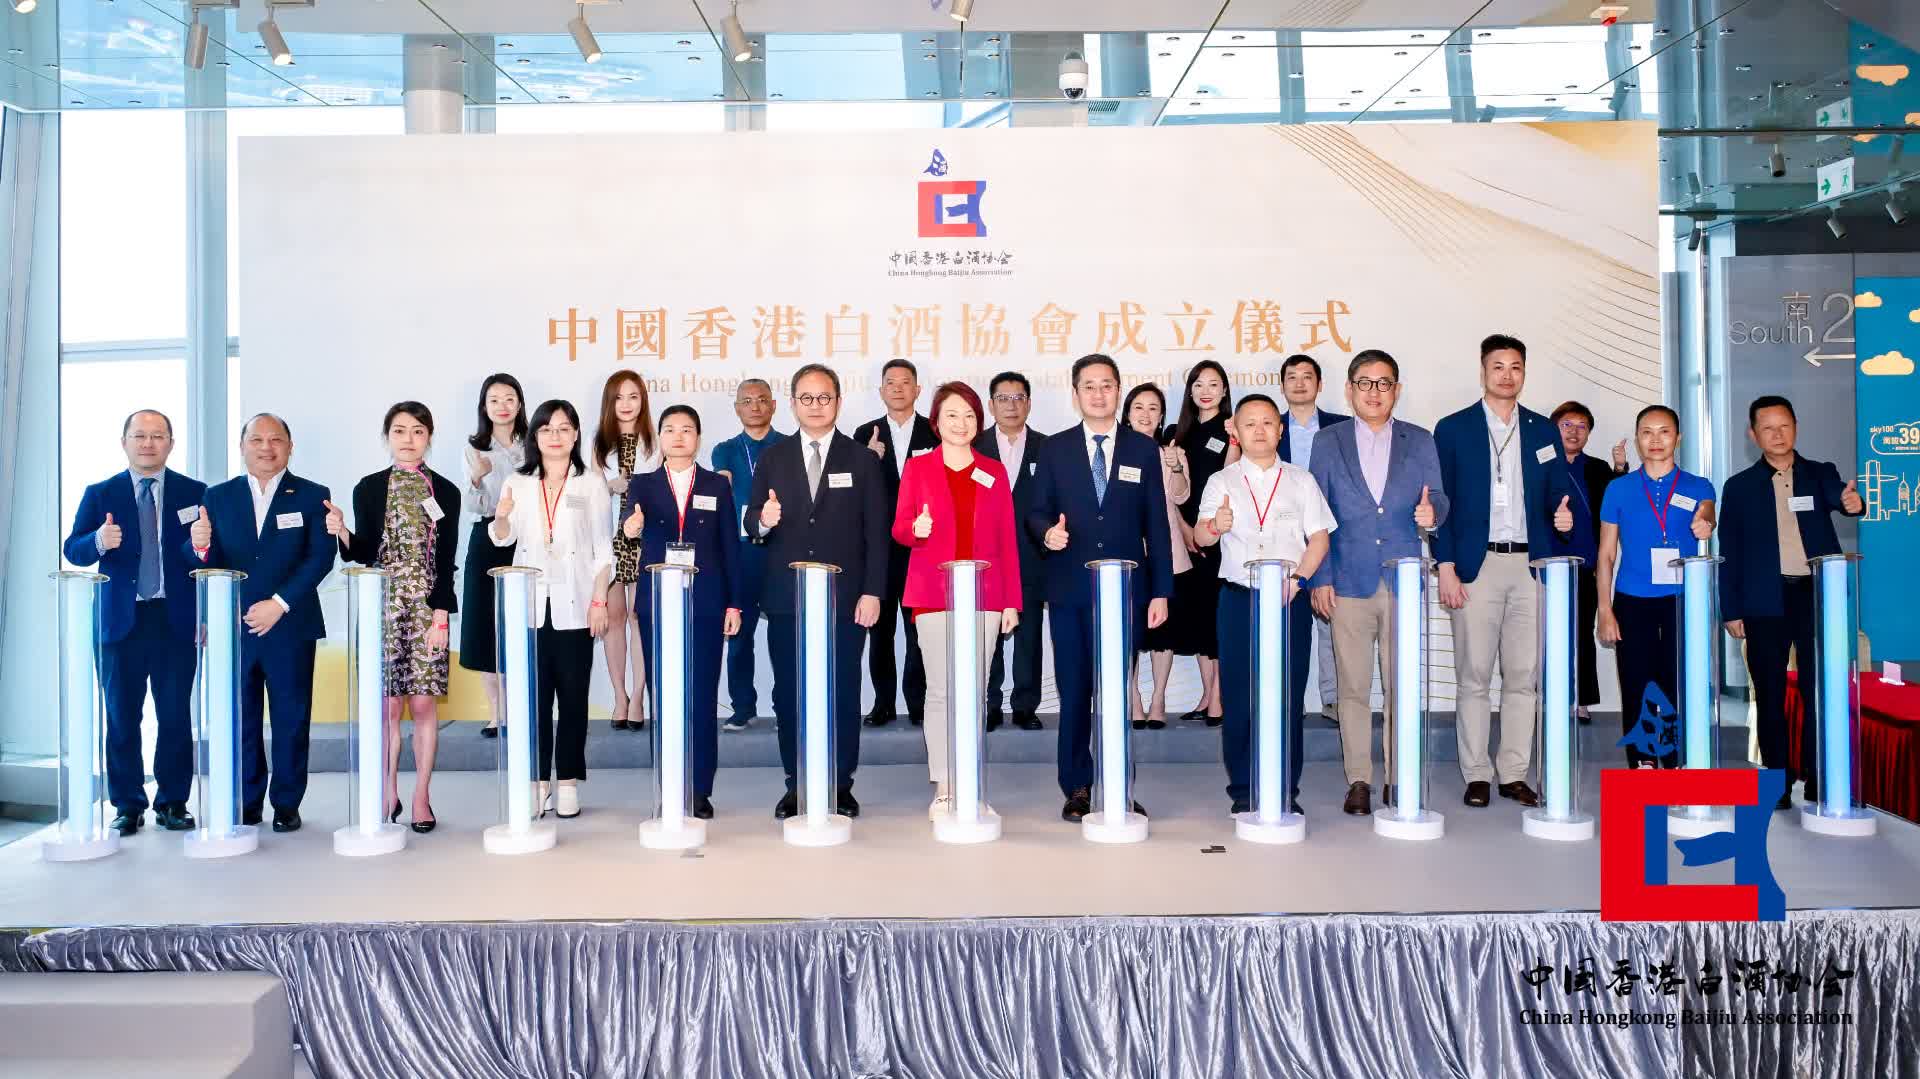 （有片）中國香港白酒協會舉行成立儀式　冀推廣中國白酒技藝和文化